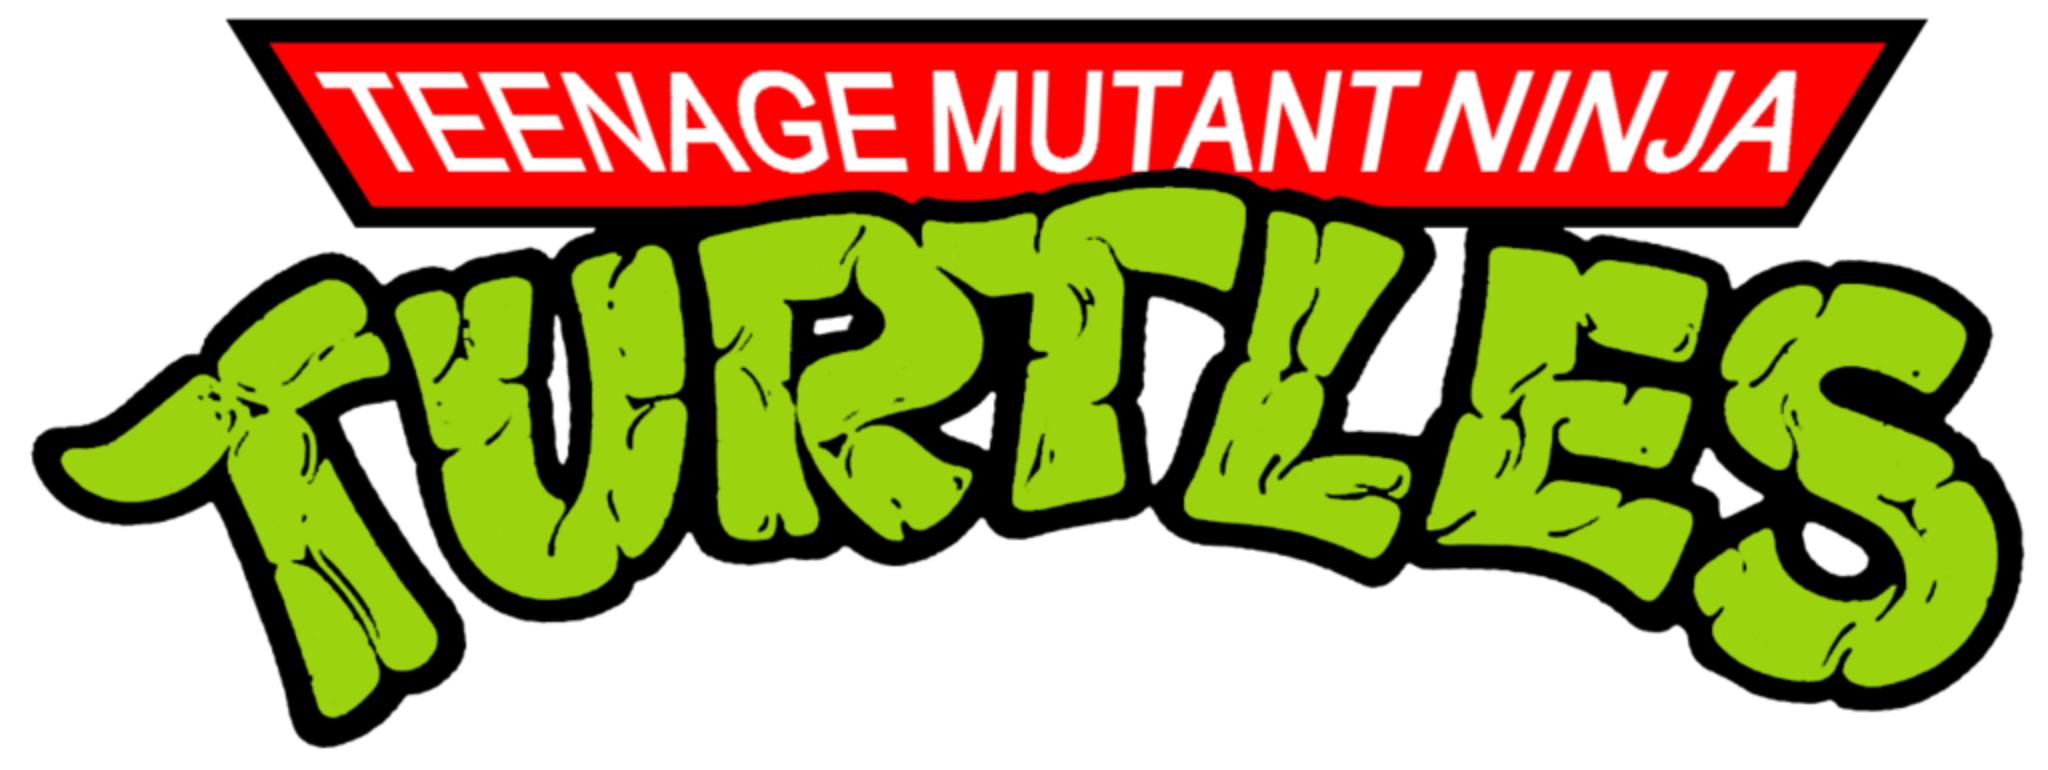 Teenage Mutant Ninja Turtles 1987 Volume 3 